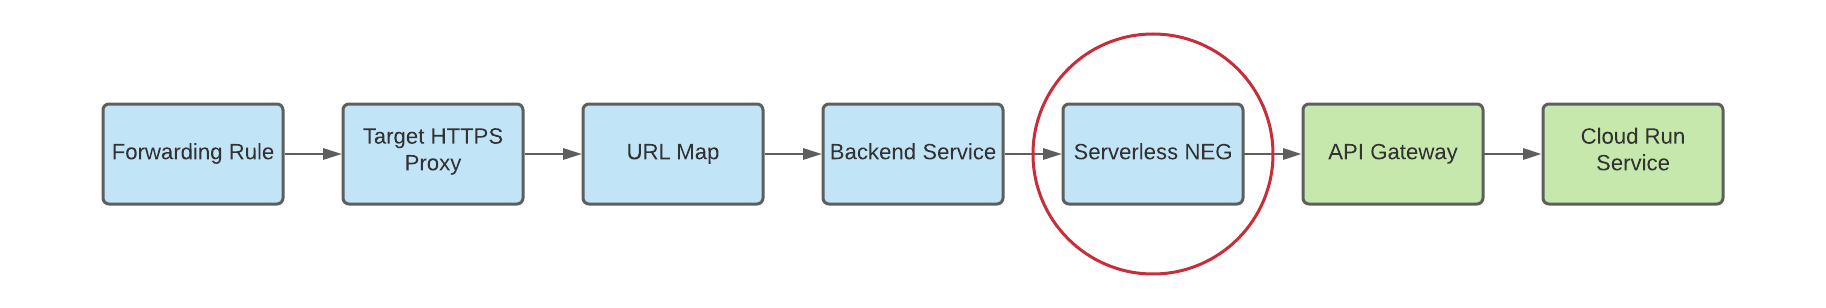 diagrama de neg sin servidores como backend para puertas de enlace multirregionales